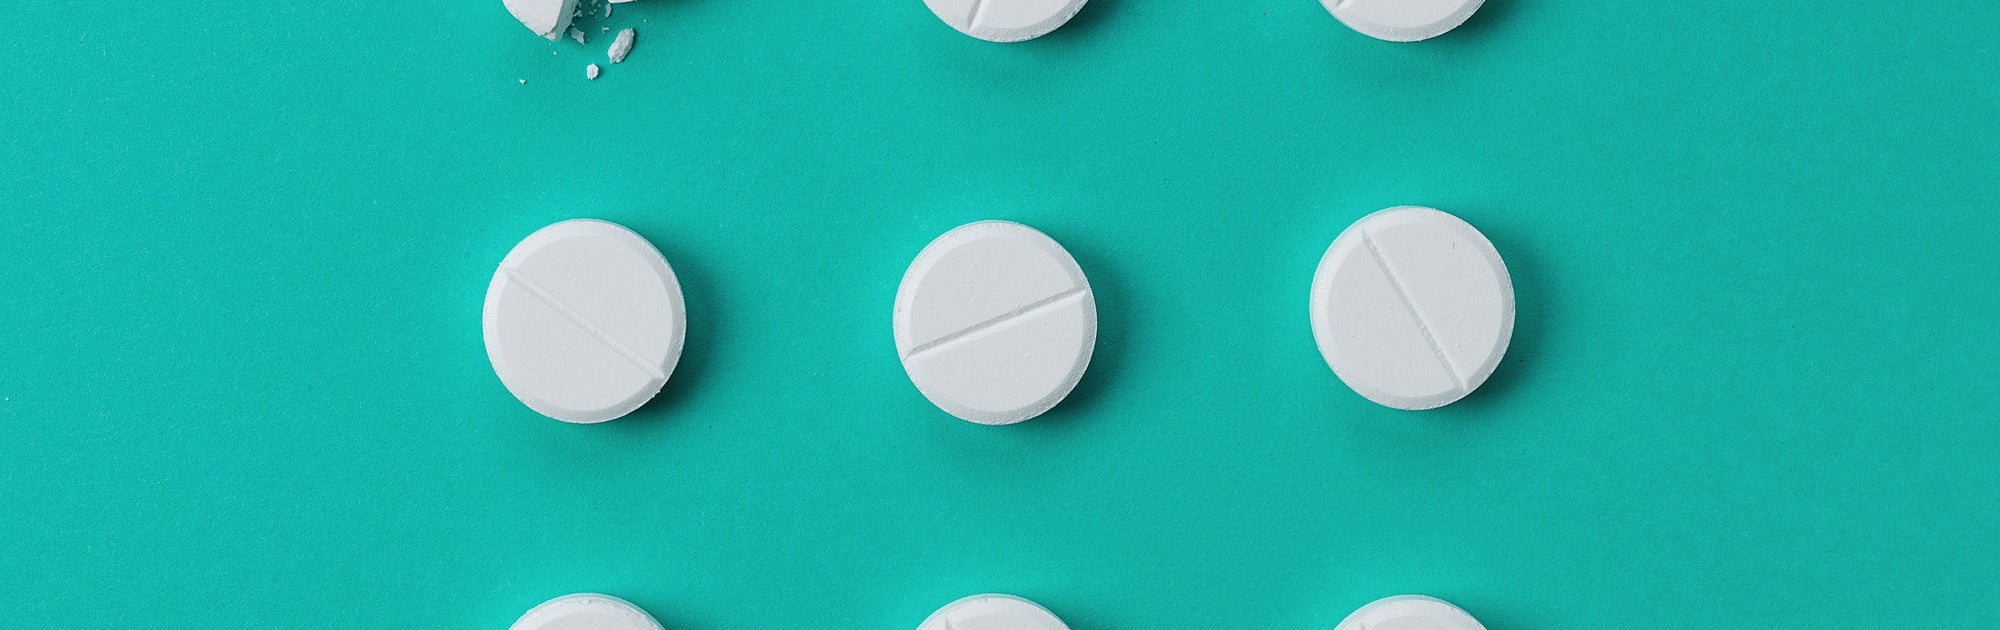 Wie lange dauert Wirkung von Paracetamol Zäpfchen?